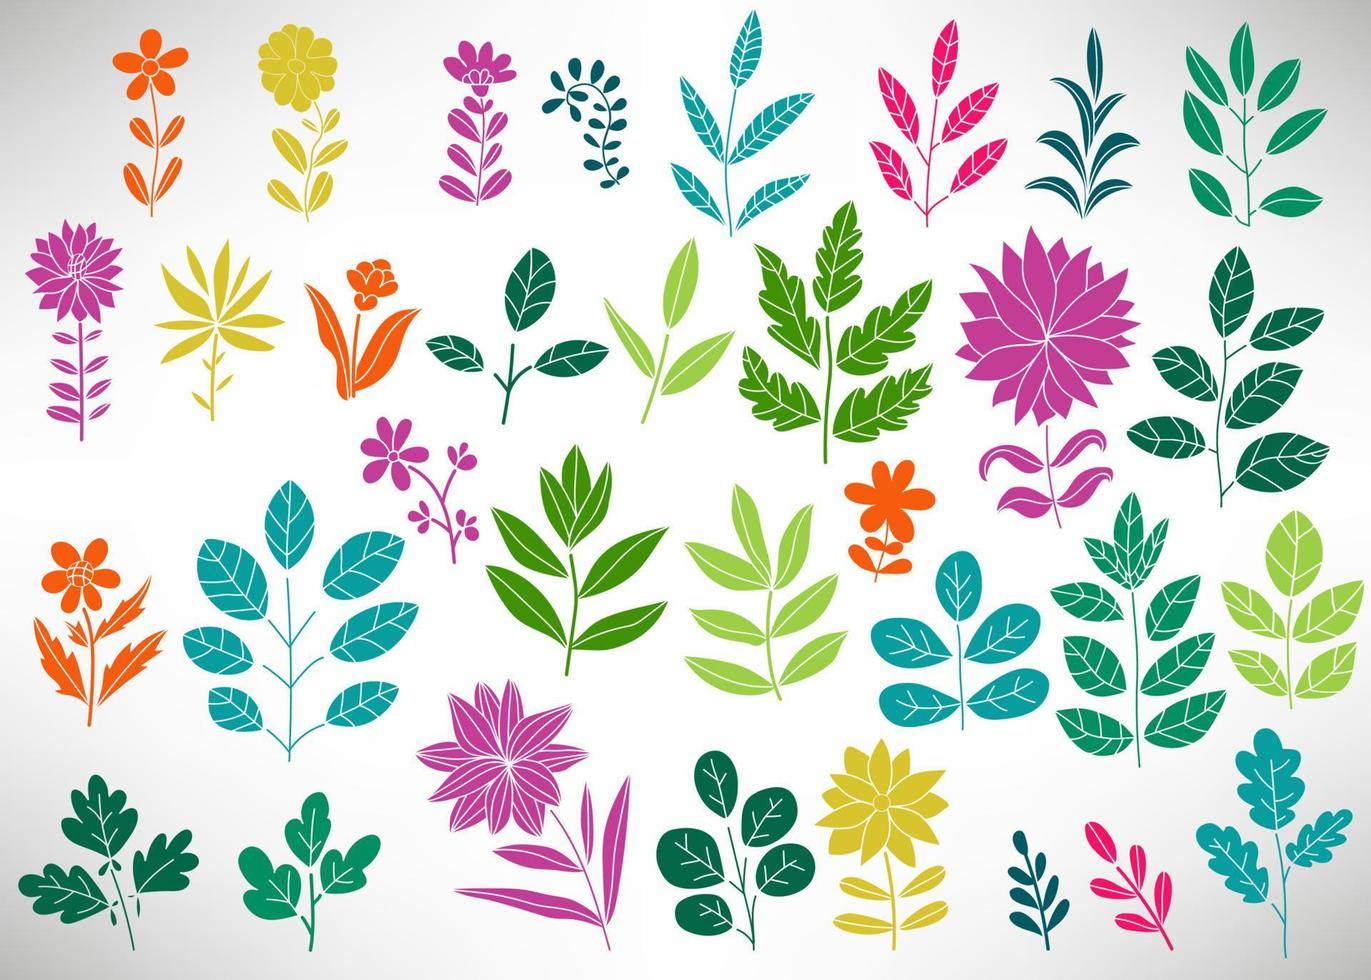 florale Reihe von bunten Doodle-Elementen, Baumzweig, Busch, Pflanze, Blätter, Blumen, Zweige Blütenblätter einzeln auf Weiß. Sammlung von Schnörkelelementen für das Design. vektor